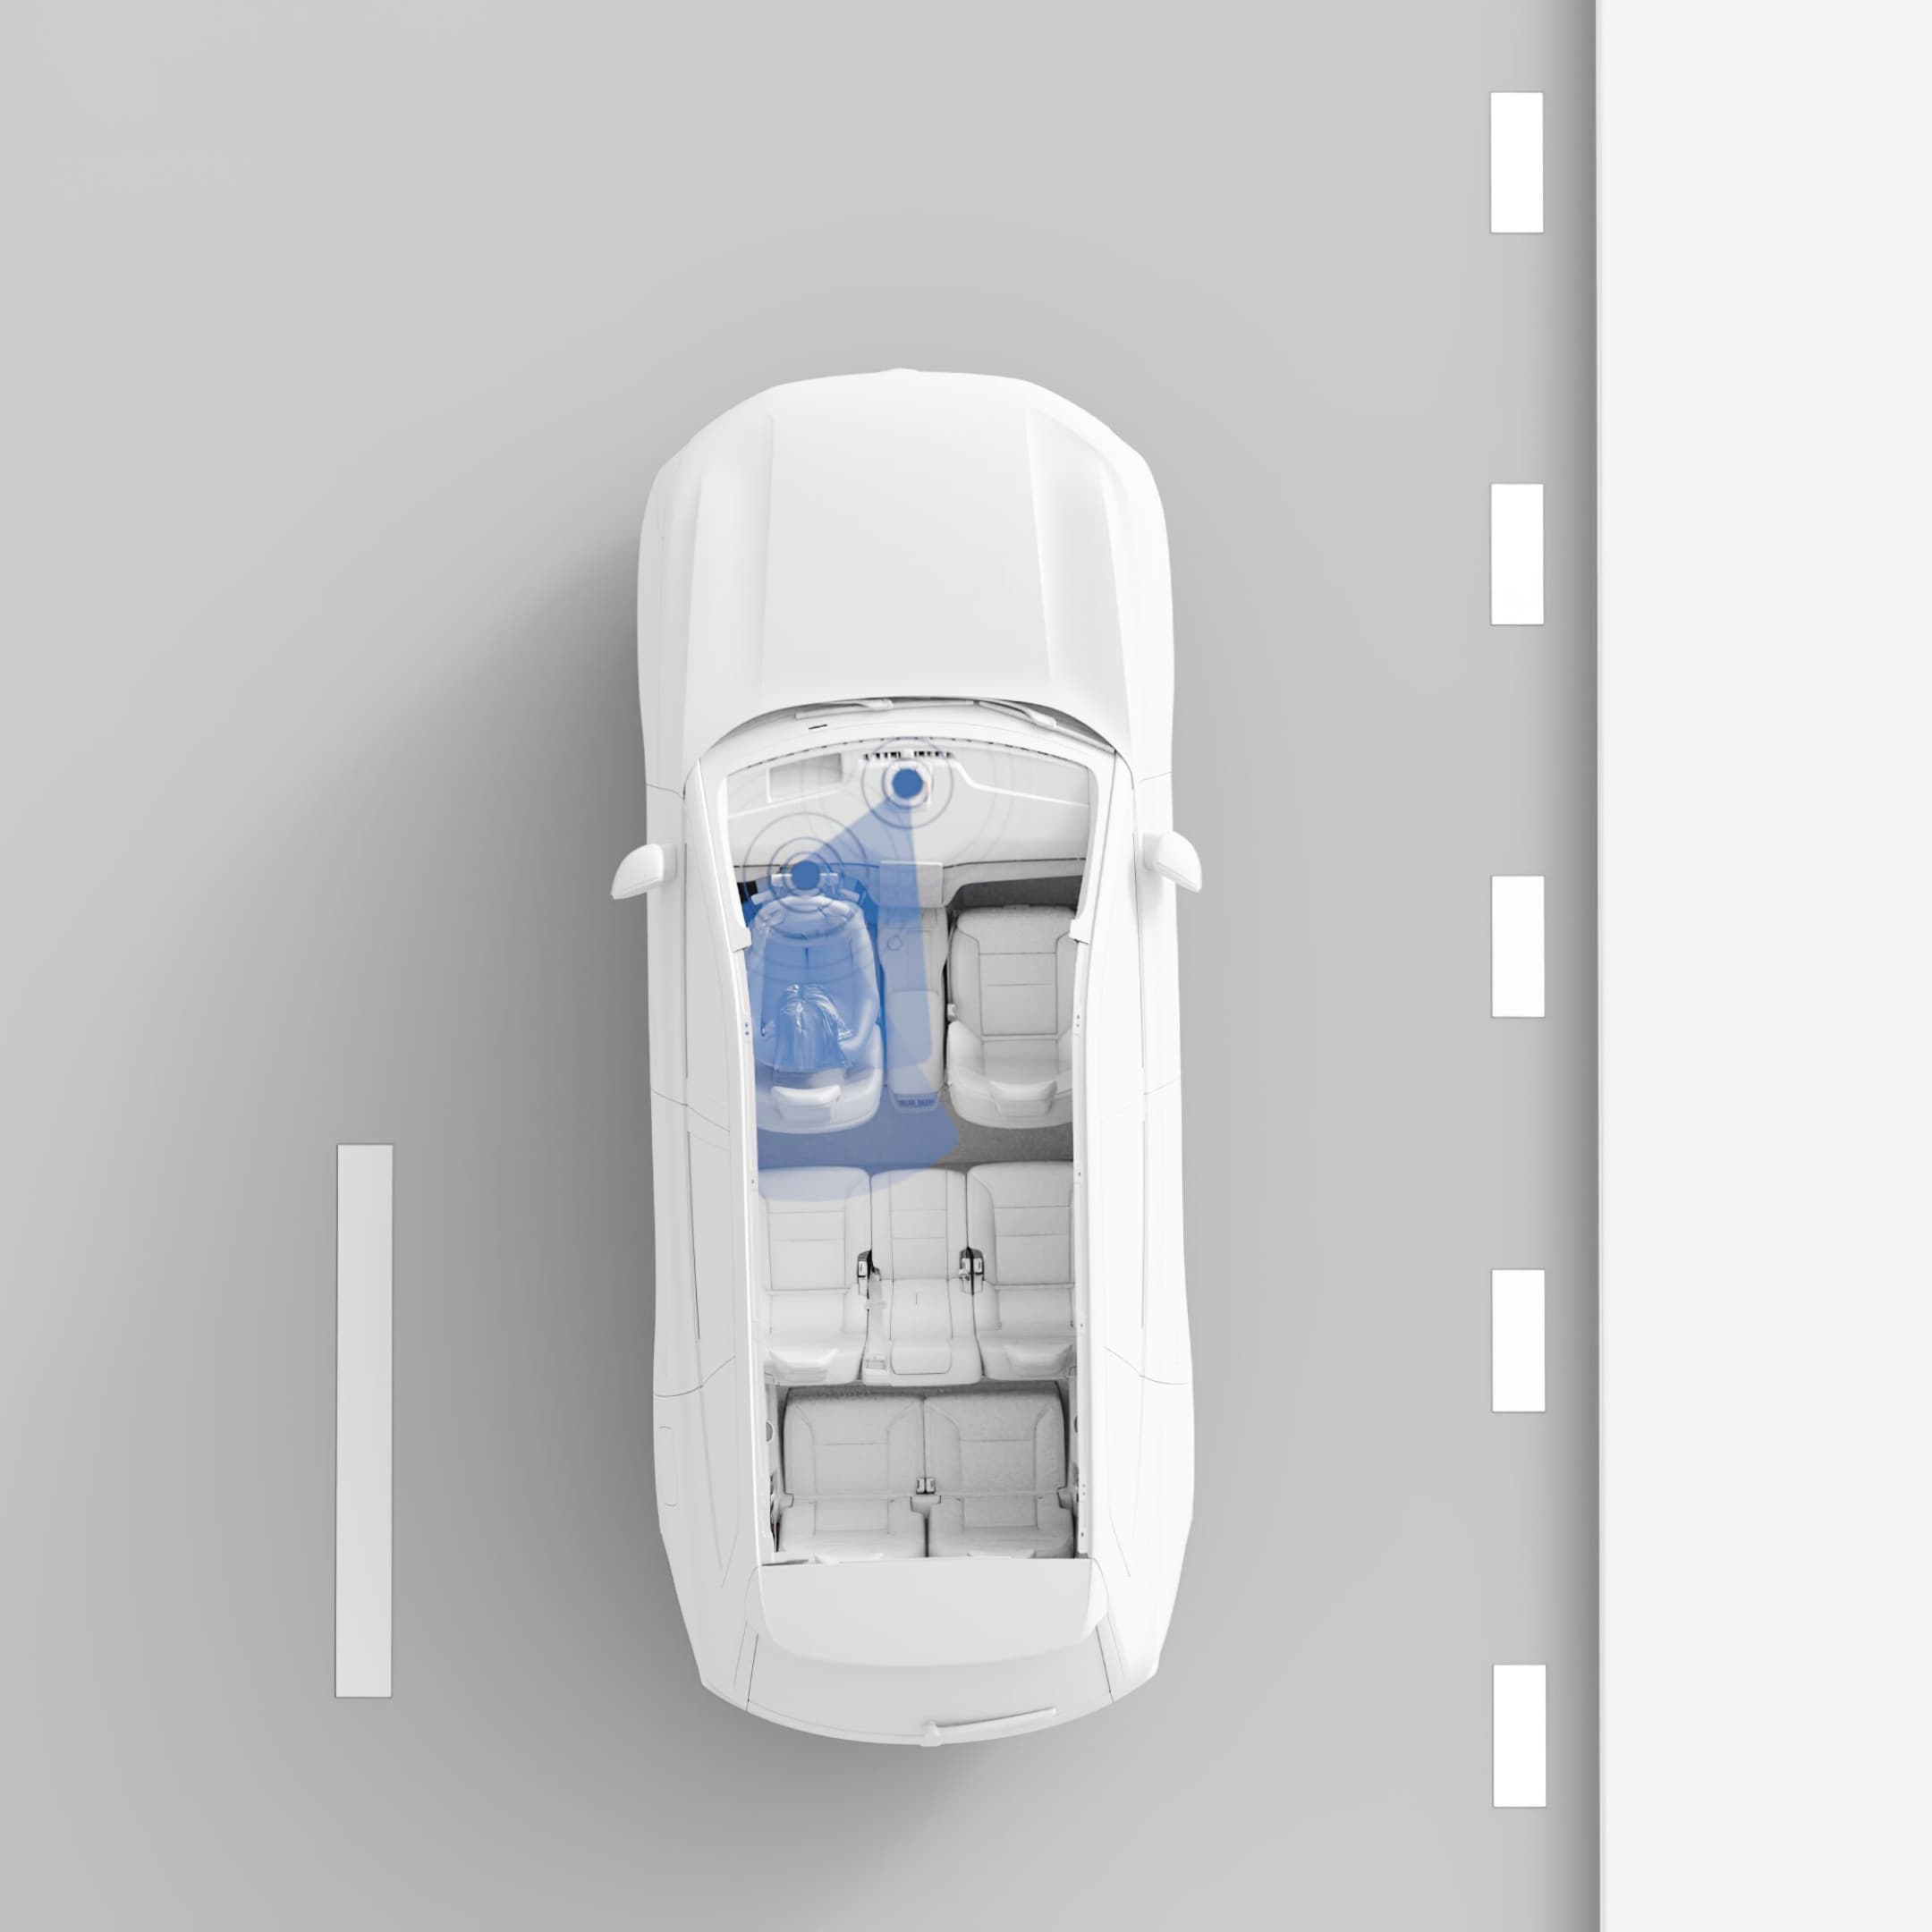 Vue panoramique de la EX90. Les capteurs et les caméras de compréhension de la conduite surveillent le conducteur.